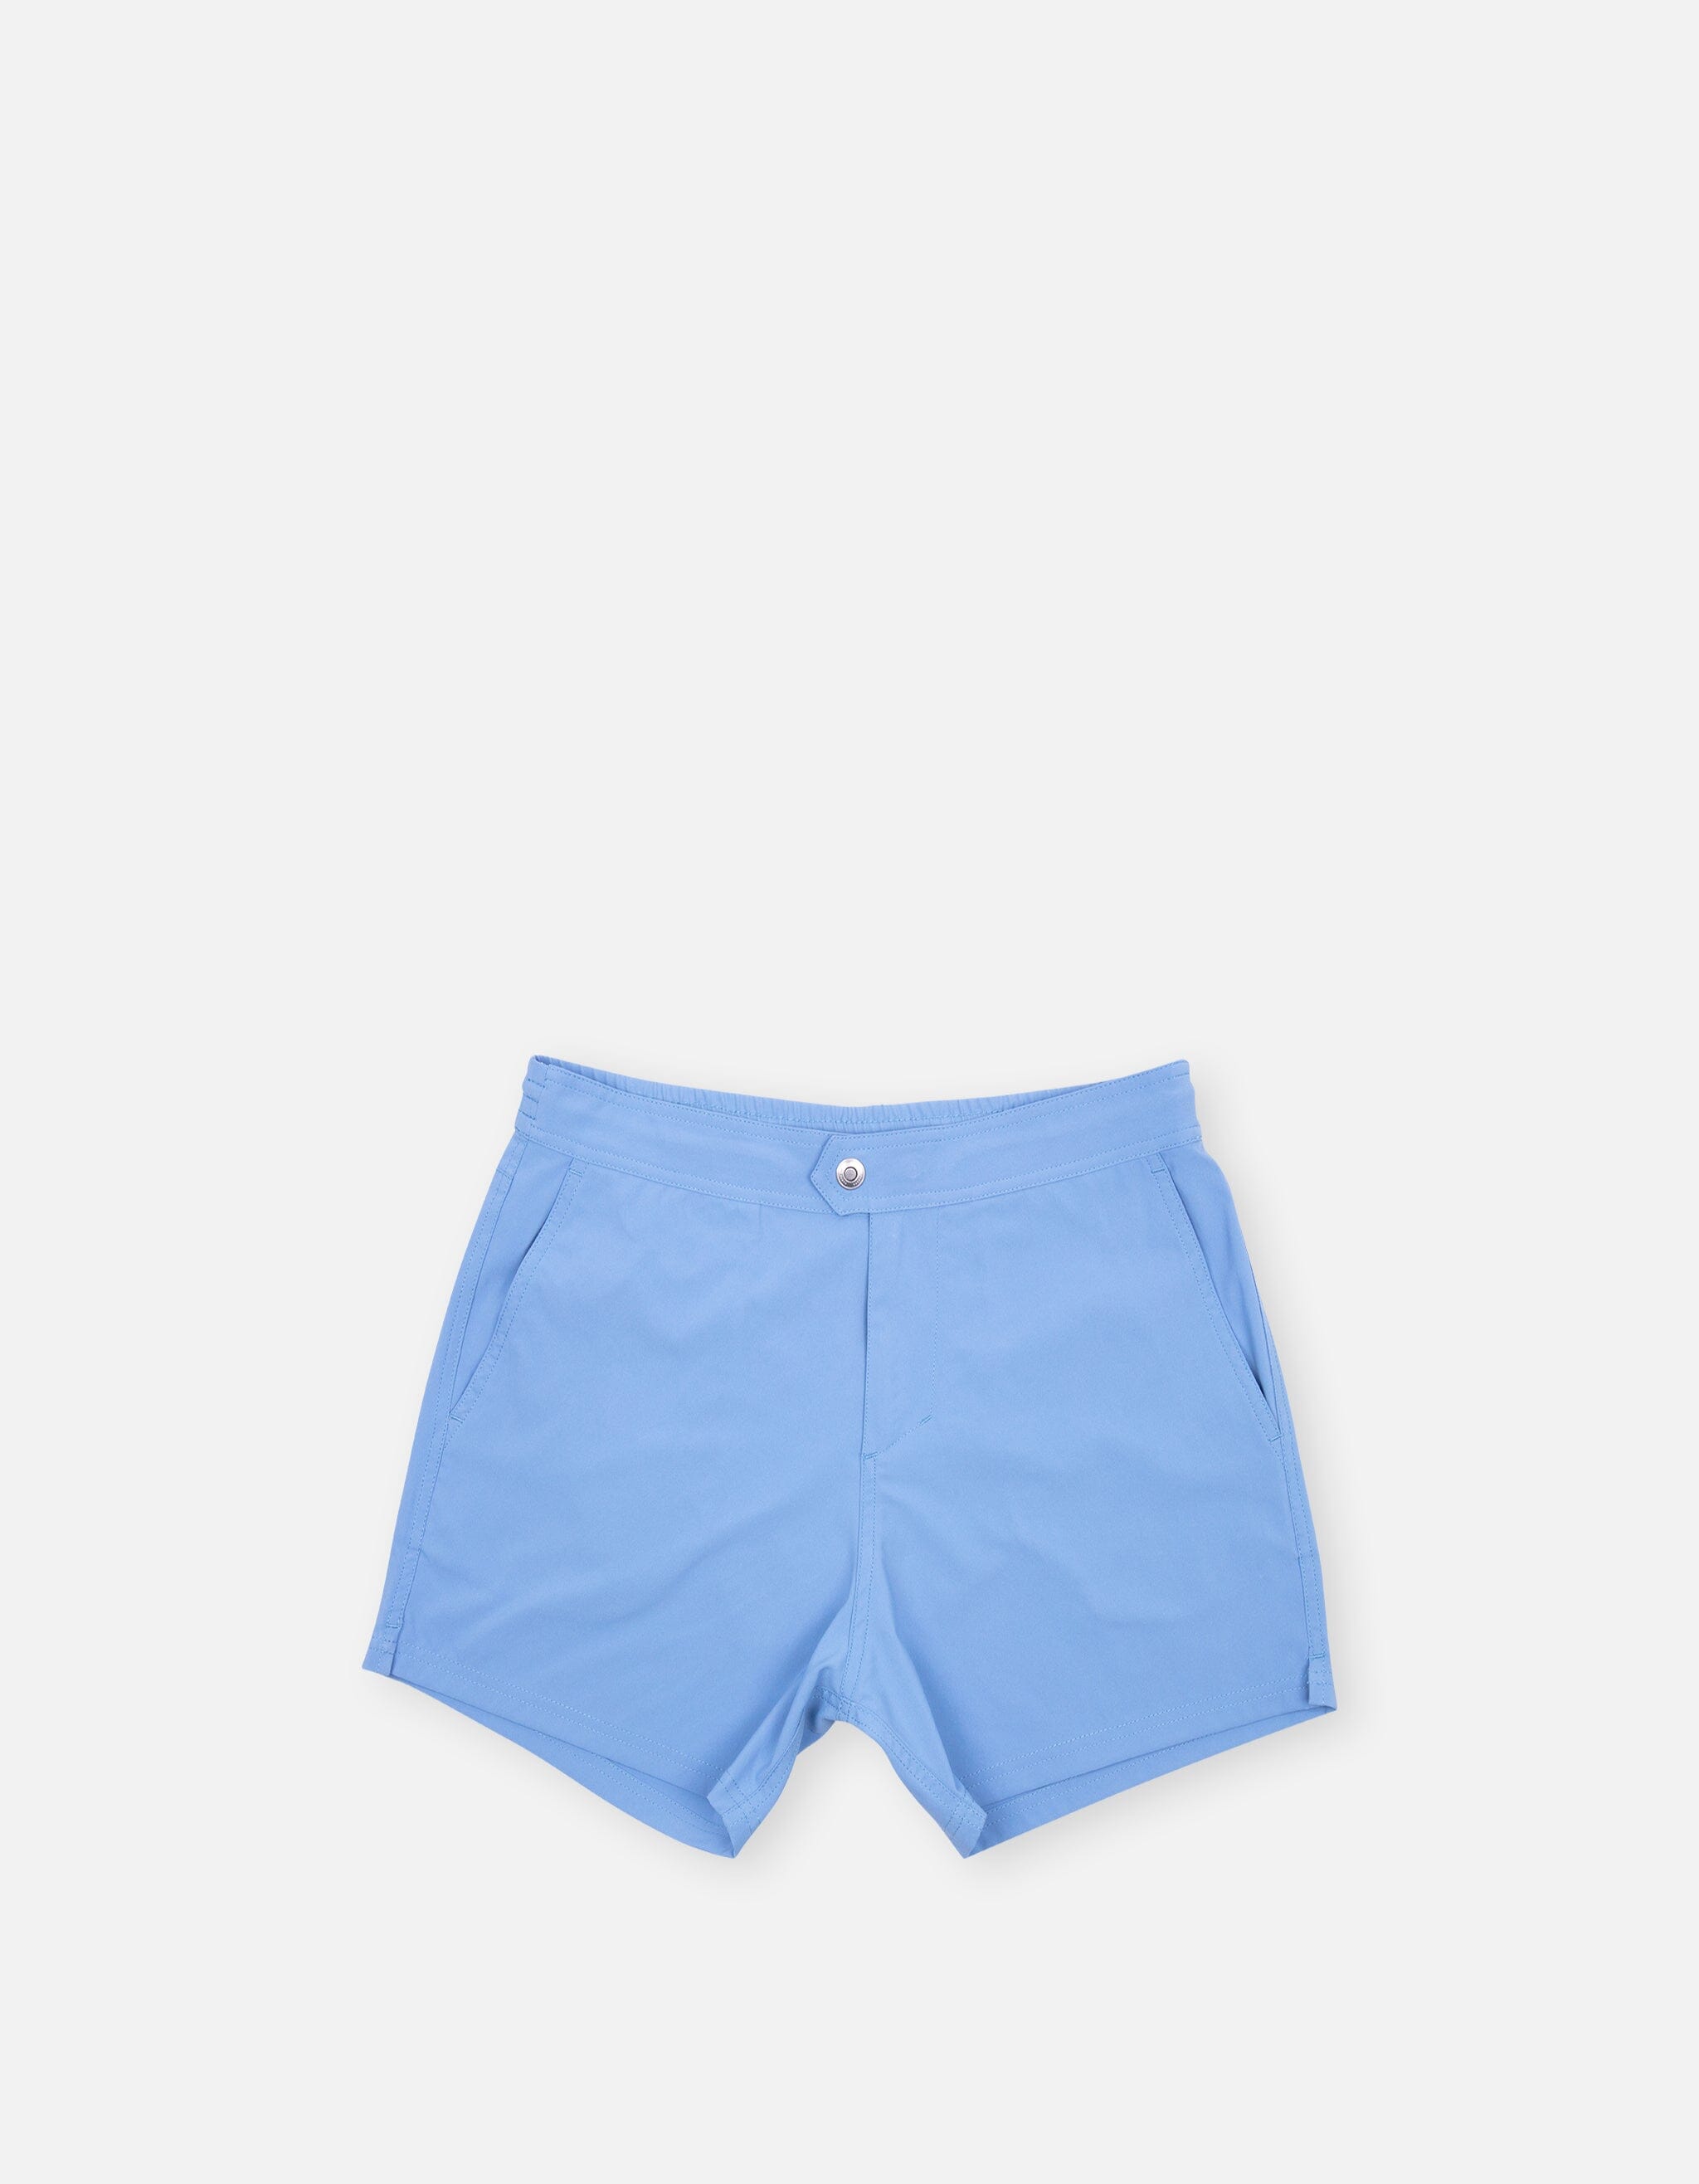 Ben - 00. Blue Grey Swim Shorts - Ben MACKEENE 